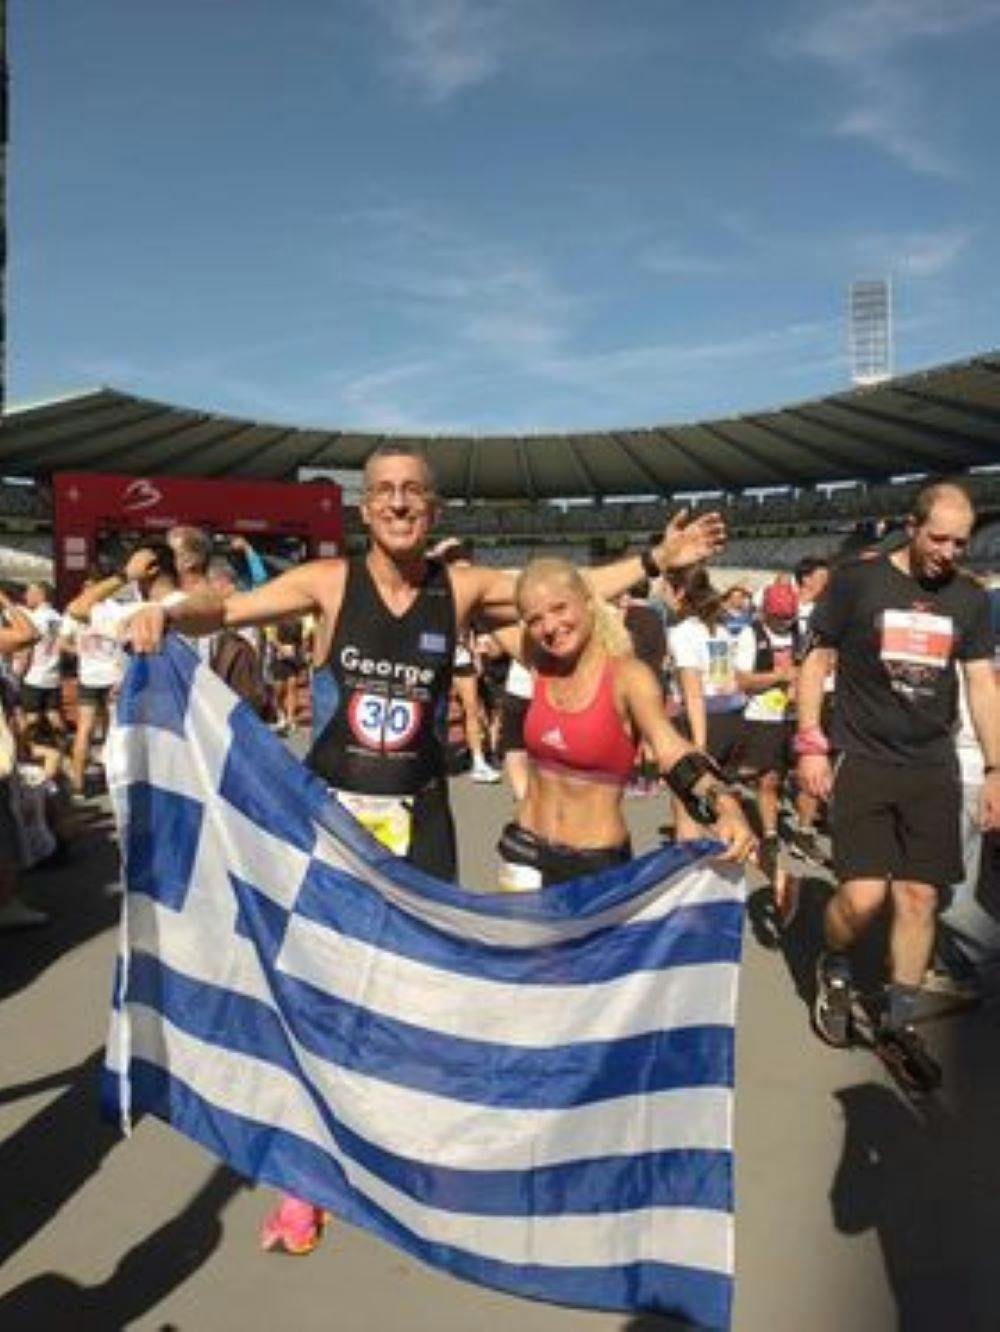 Δεκάδες Έλληνες έτρεξαν στον Μαραθώνιο των Βρυξελλών (pics) runbeat.gr 